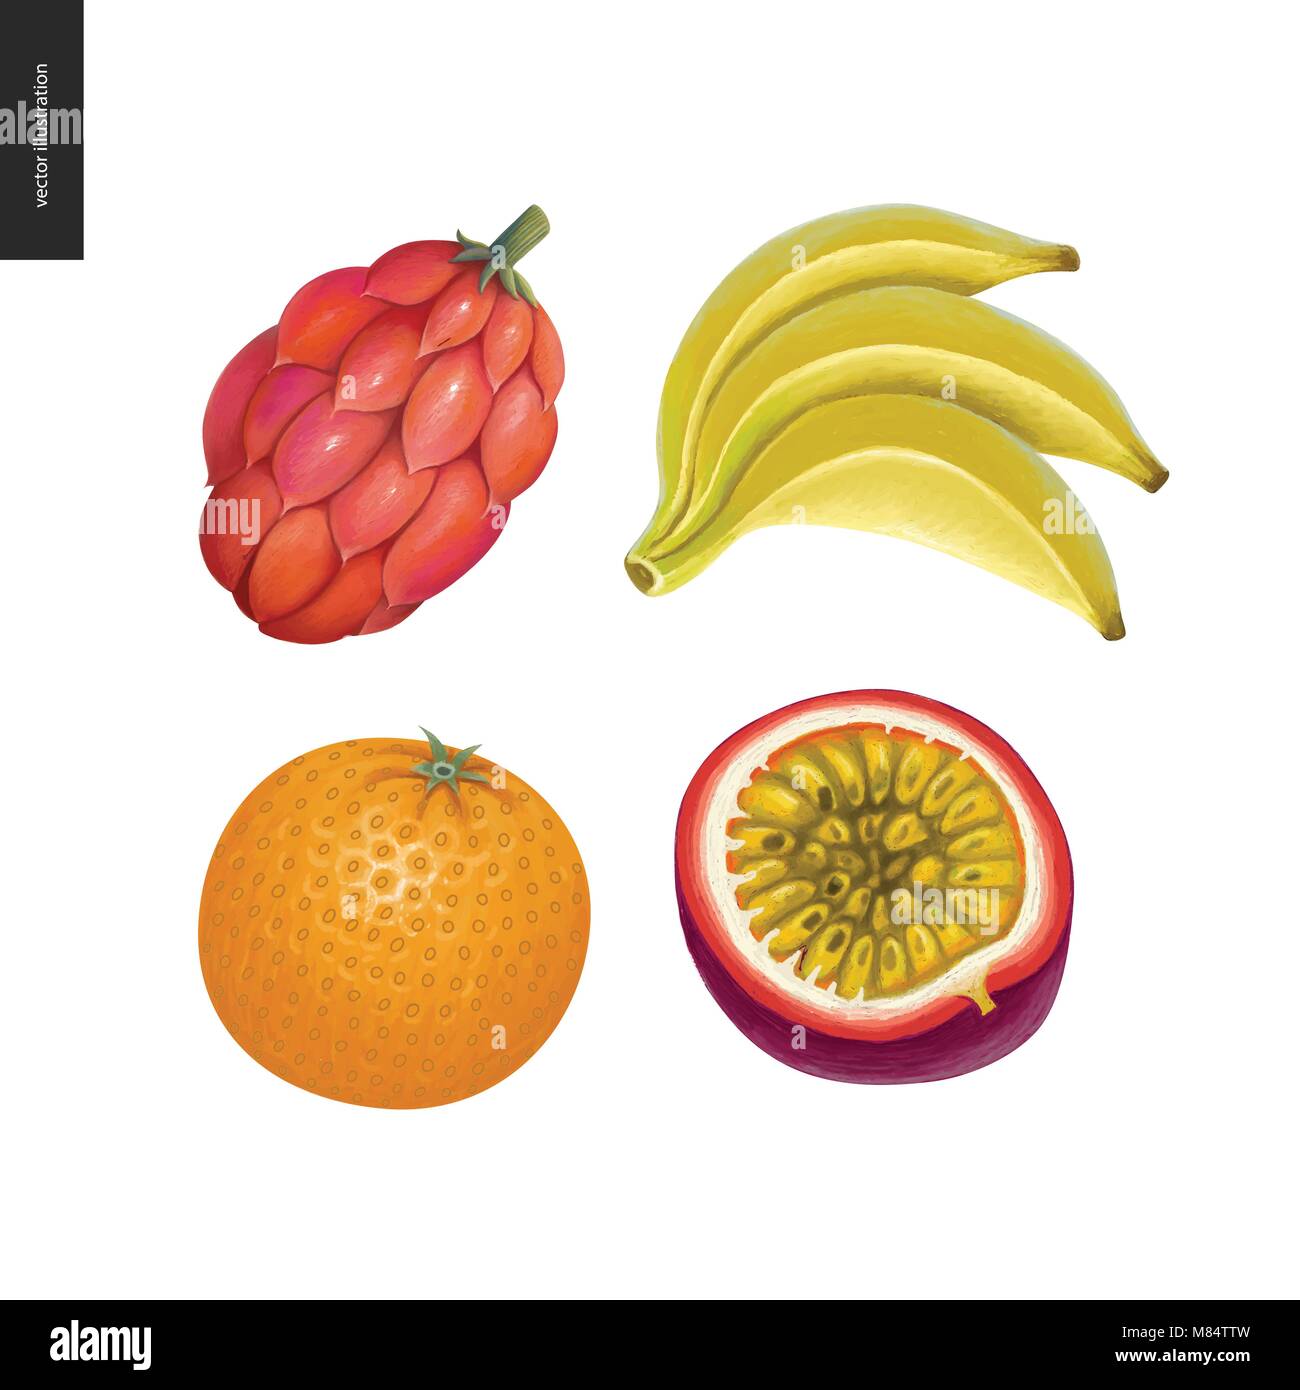 Vecteur de fruits autocollants. Un ensemble de quatre dessins à la main les fruits, orange, banane, fruits de la passion, et une fantaisie de fruits rouges Illustration de Vecteur